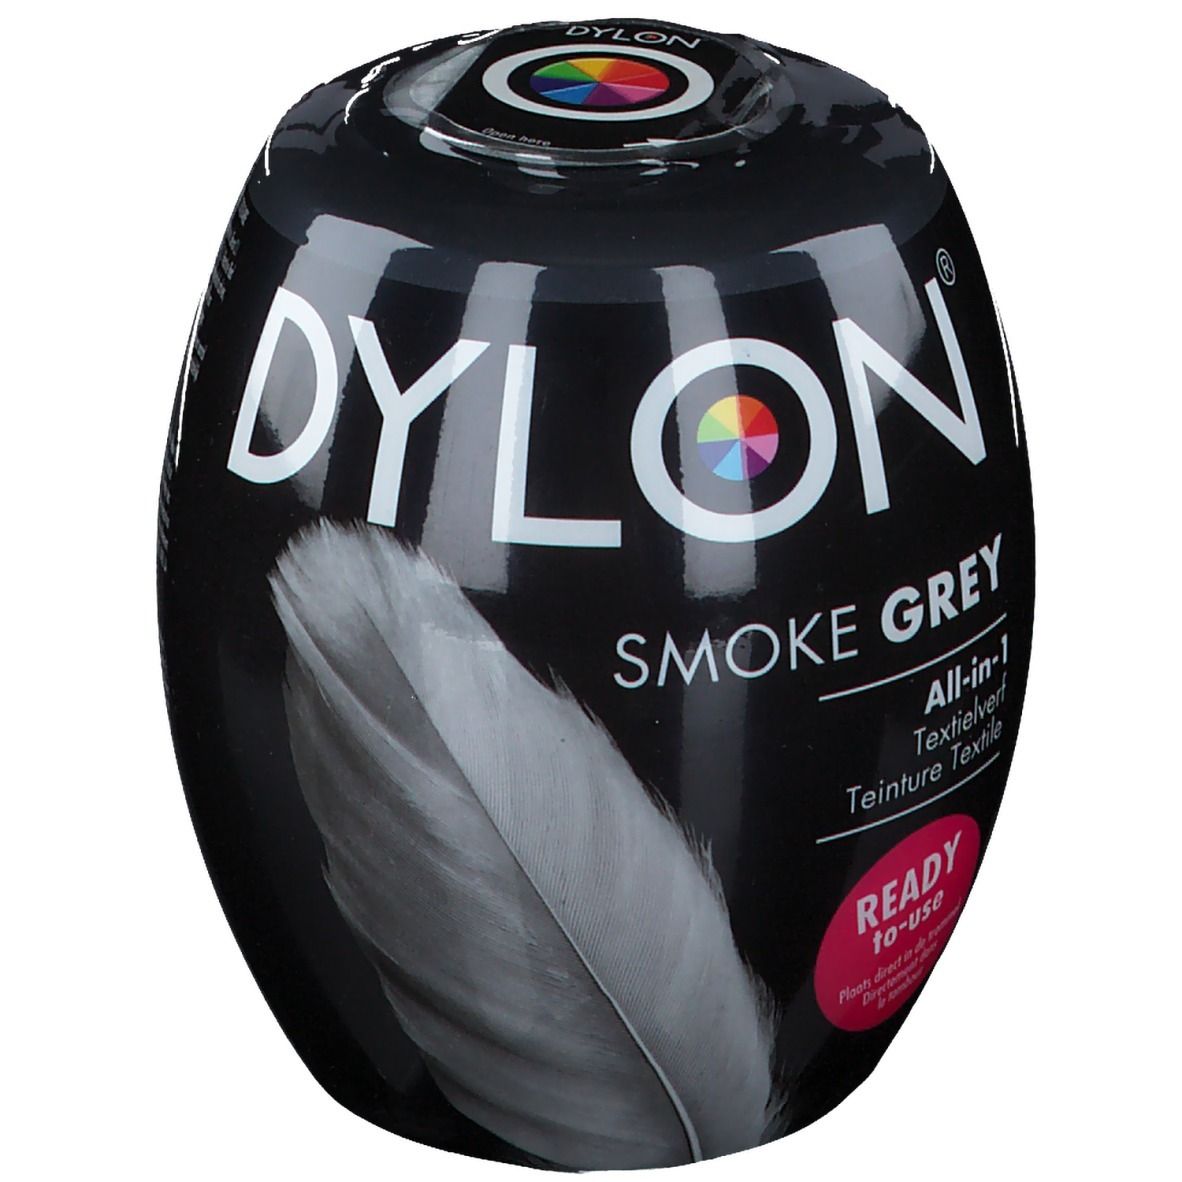 DYLON® Zinngrau All-in-1 Textilfarbe